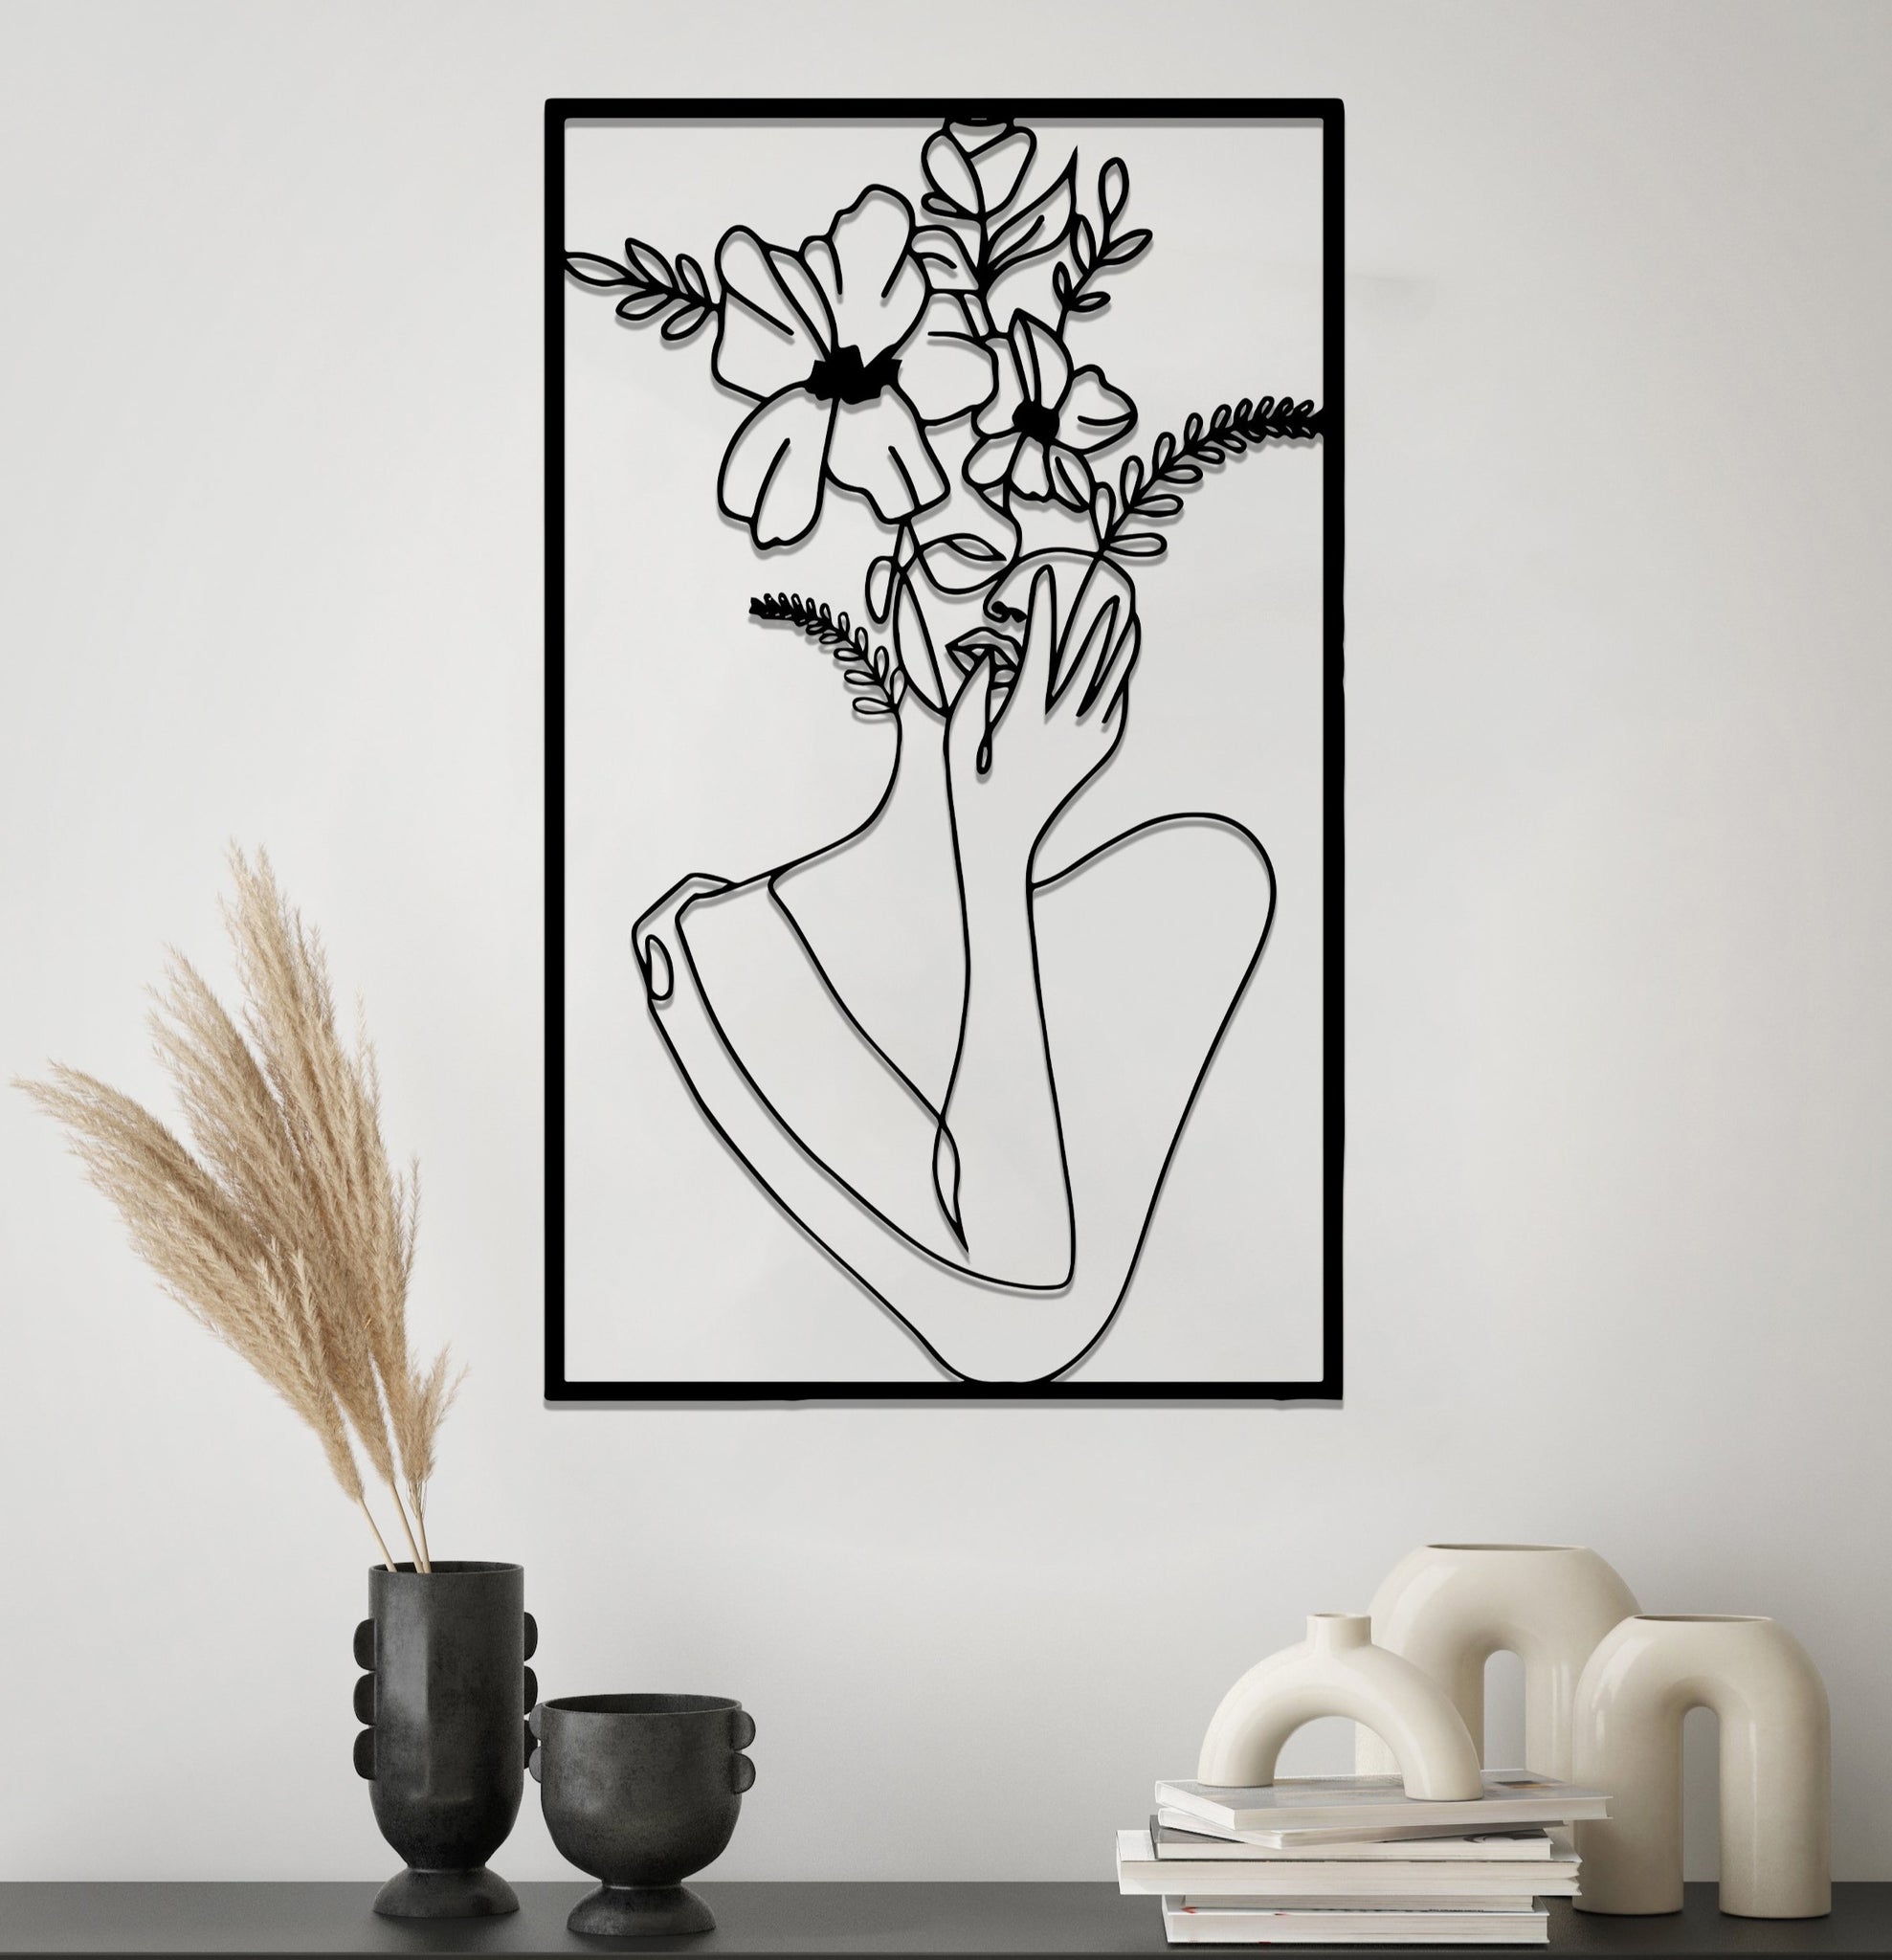 Деревянная дизайнерская картина "Vase"  (50 x 30 см)